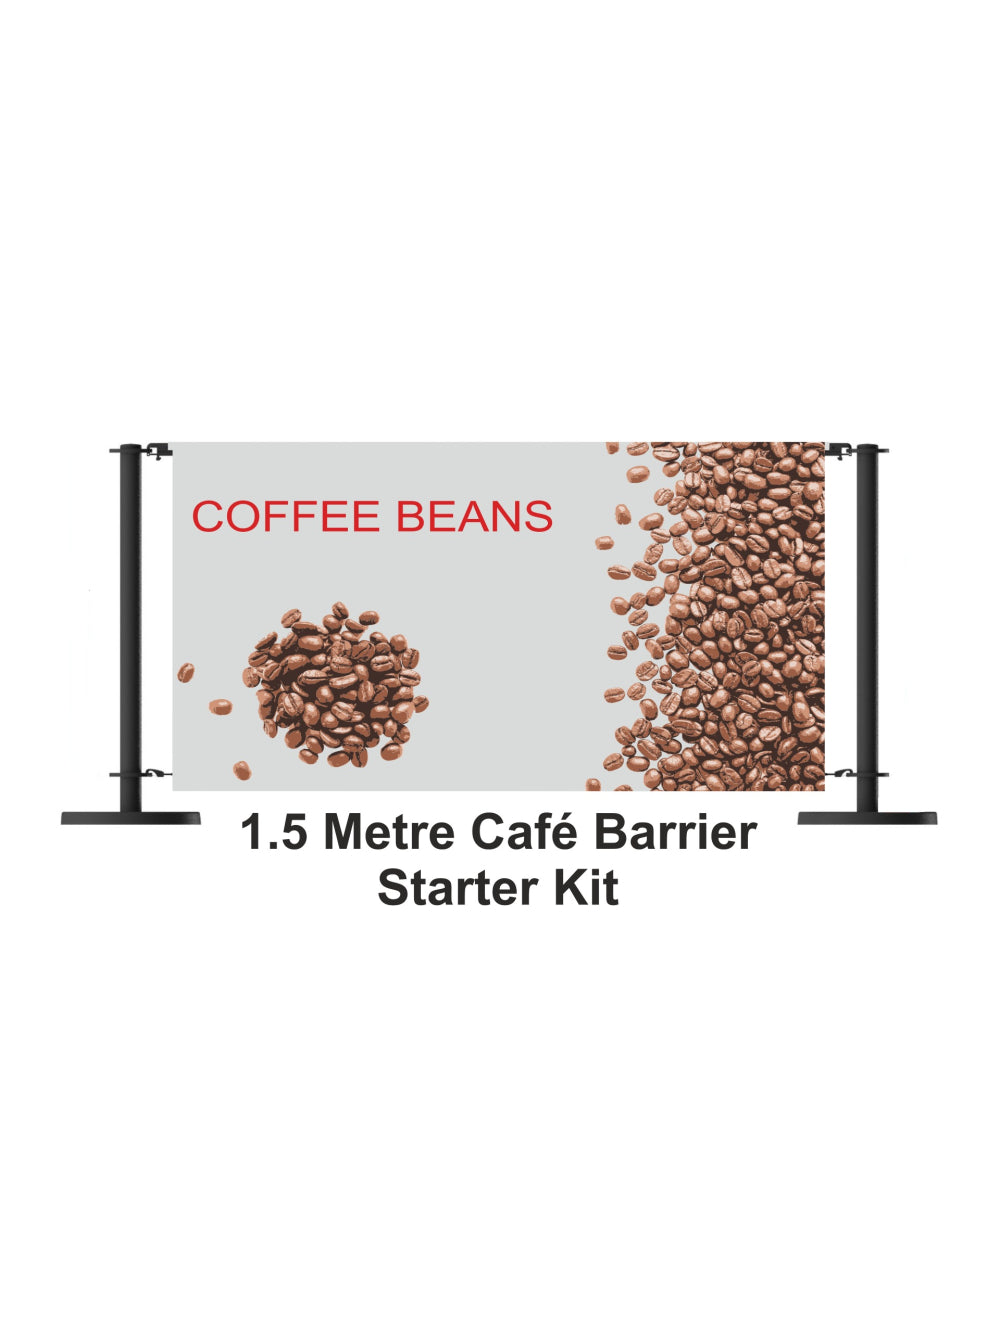 Κιτ εκκίνησης Cafe Barrier 1,5 μέτρου